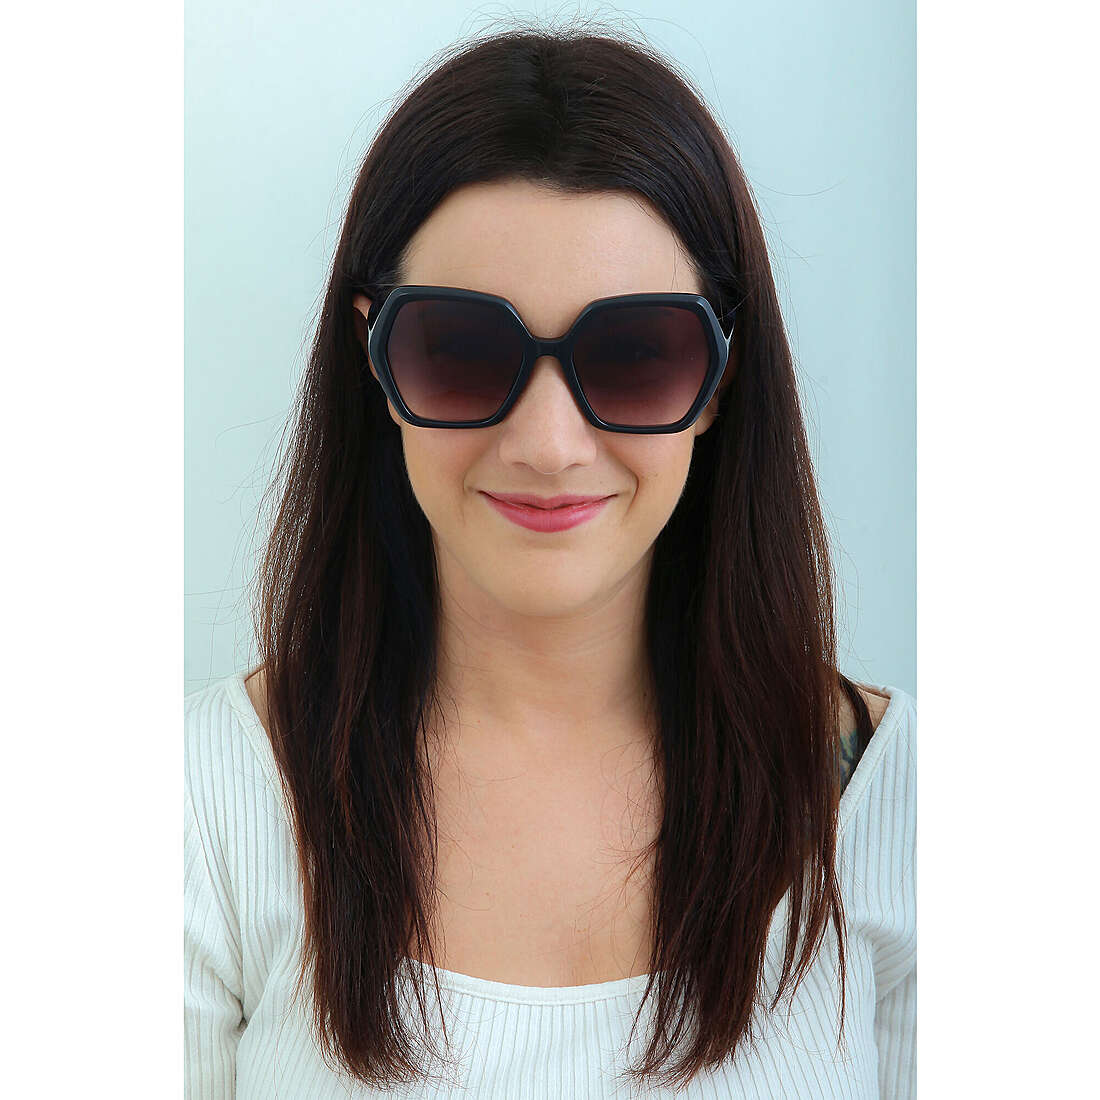 Nina Ricci occhiali da sole donna SNR35606A5 indosso